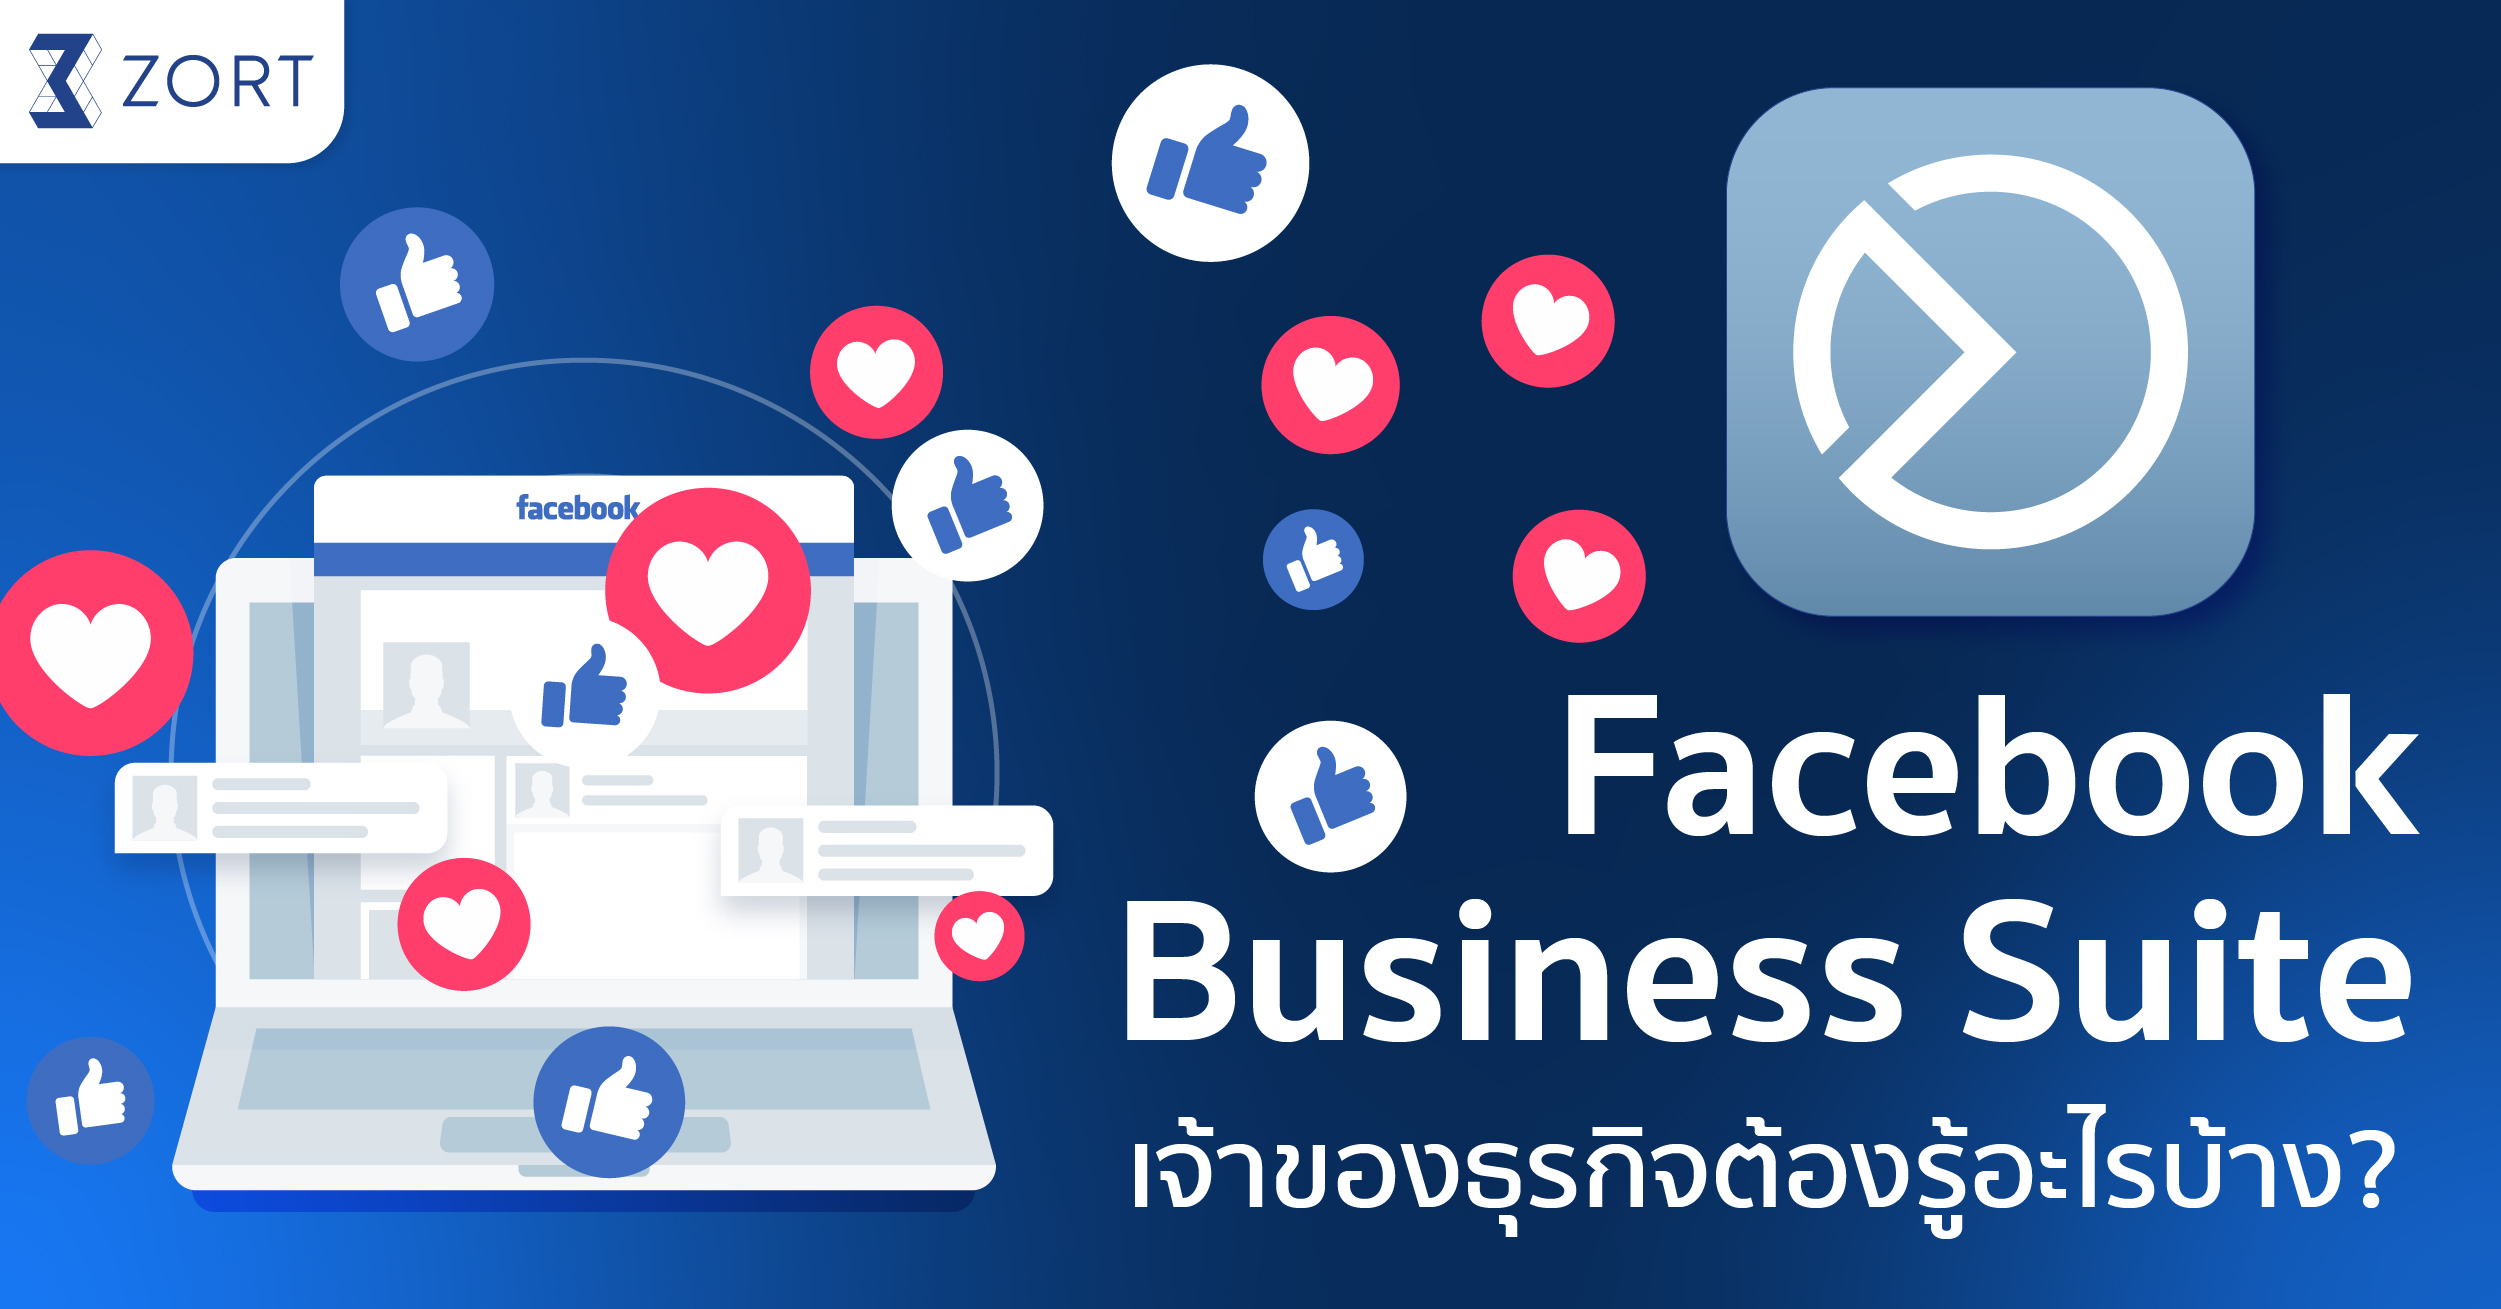 Facebook Business Suite คือ